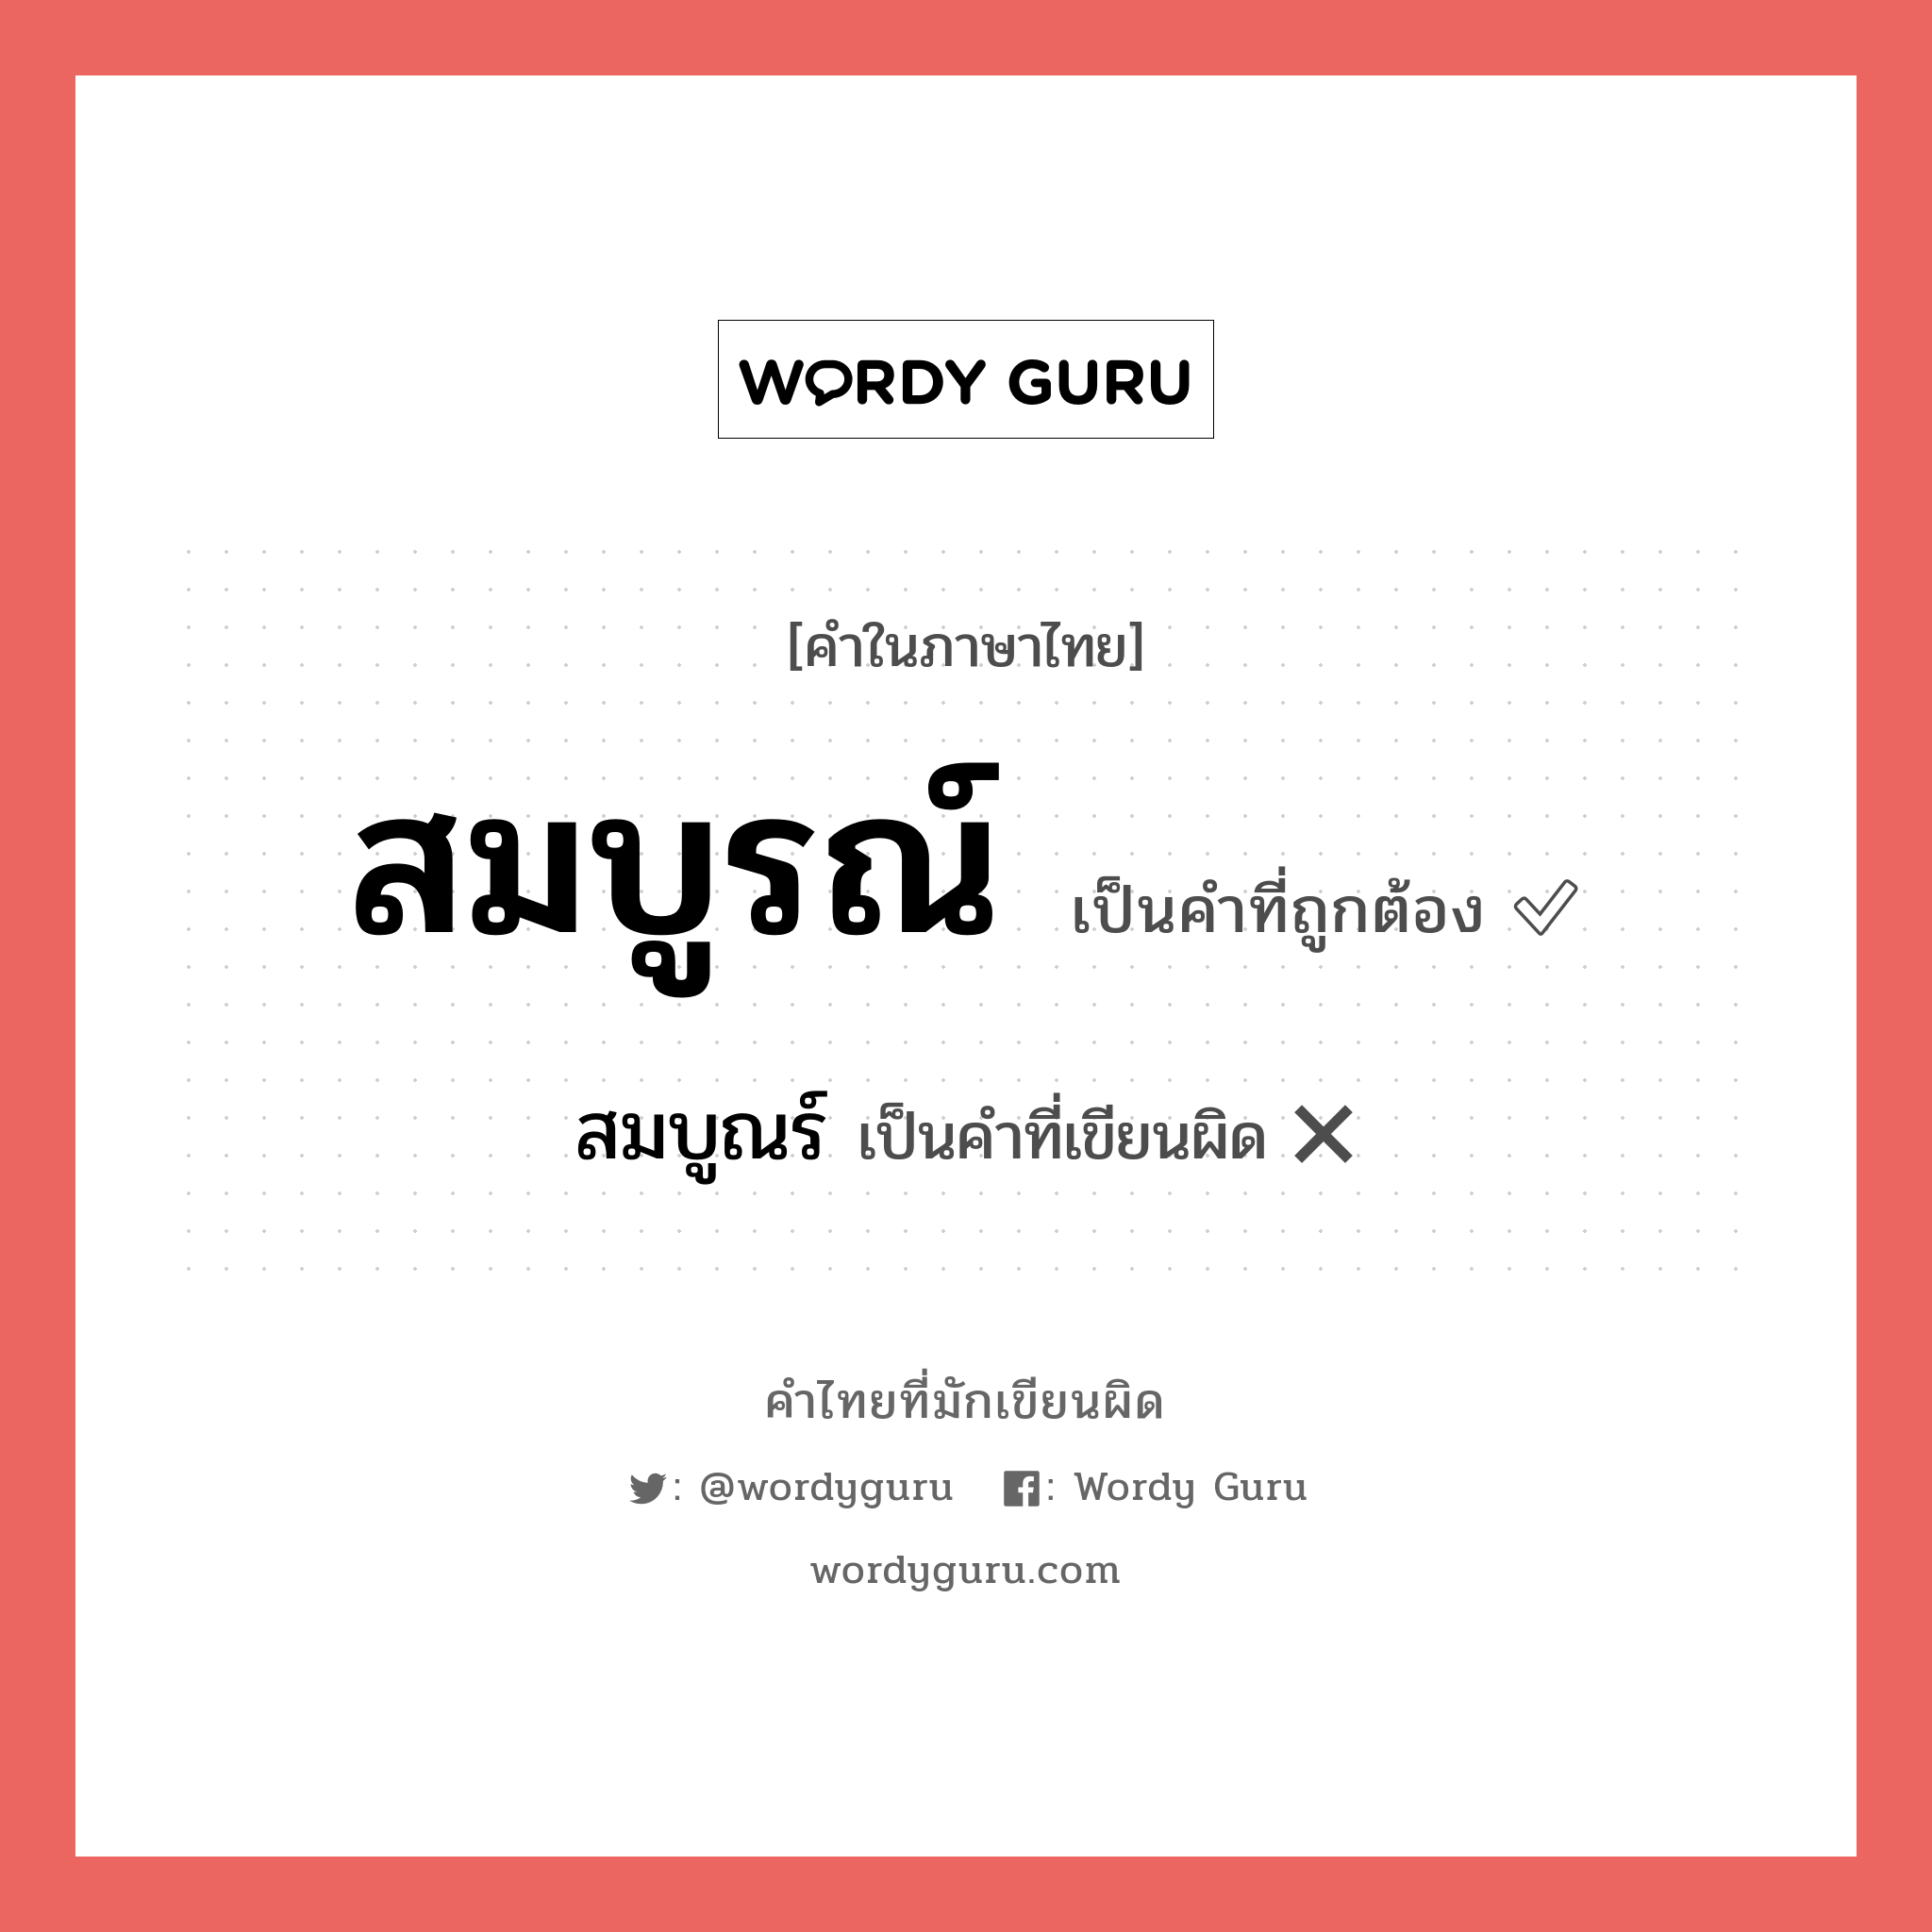 สมบูรณ์ หรือ สมบูร คำไหนเขียนถูก?, คำในภาษาไทยที่มักเขียนผิด สมบูรณ์ คำที่ผิด ❌ สมบูณร์